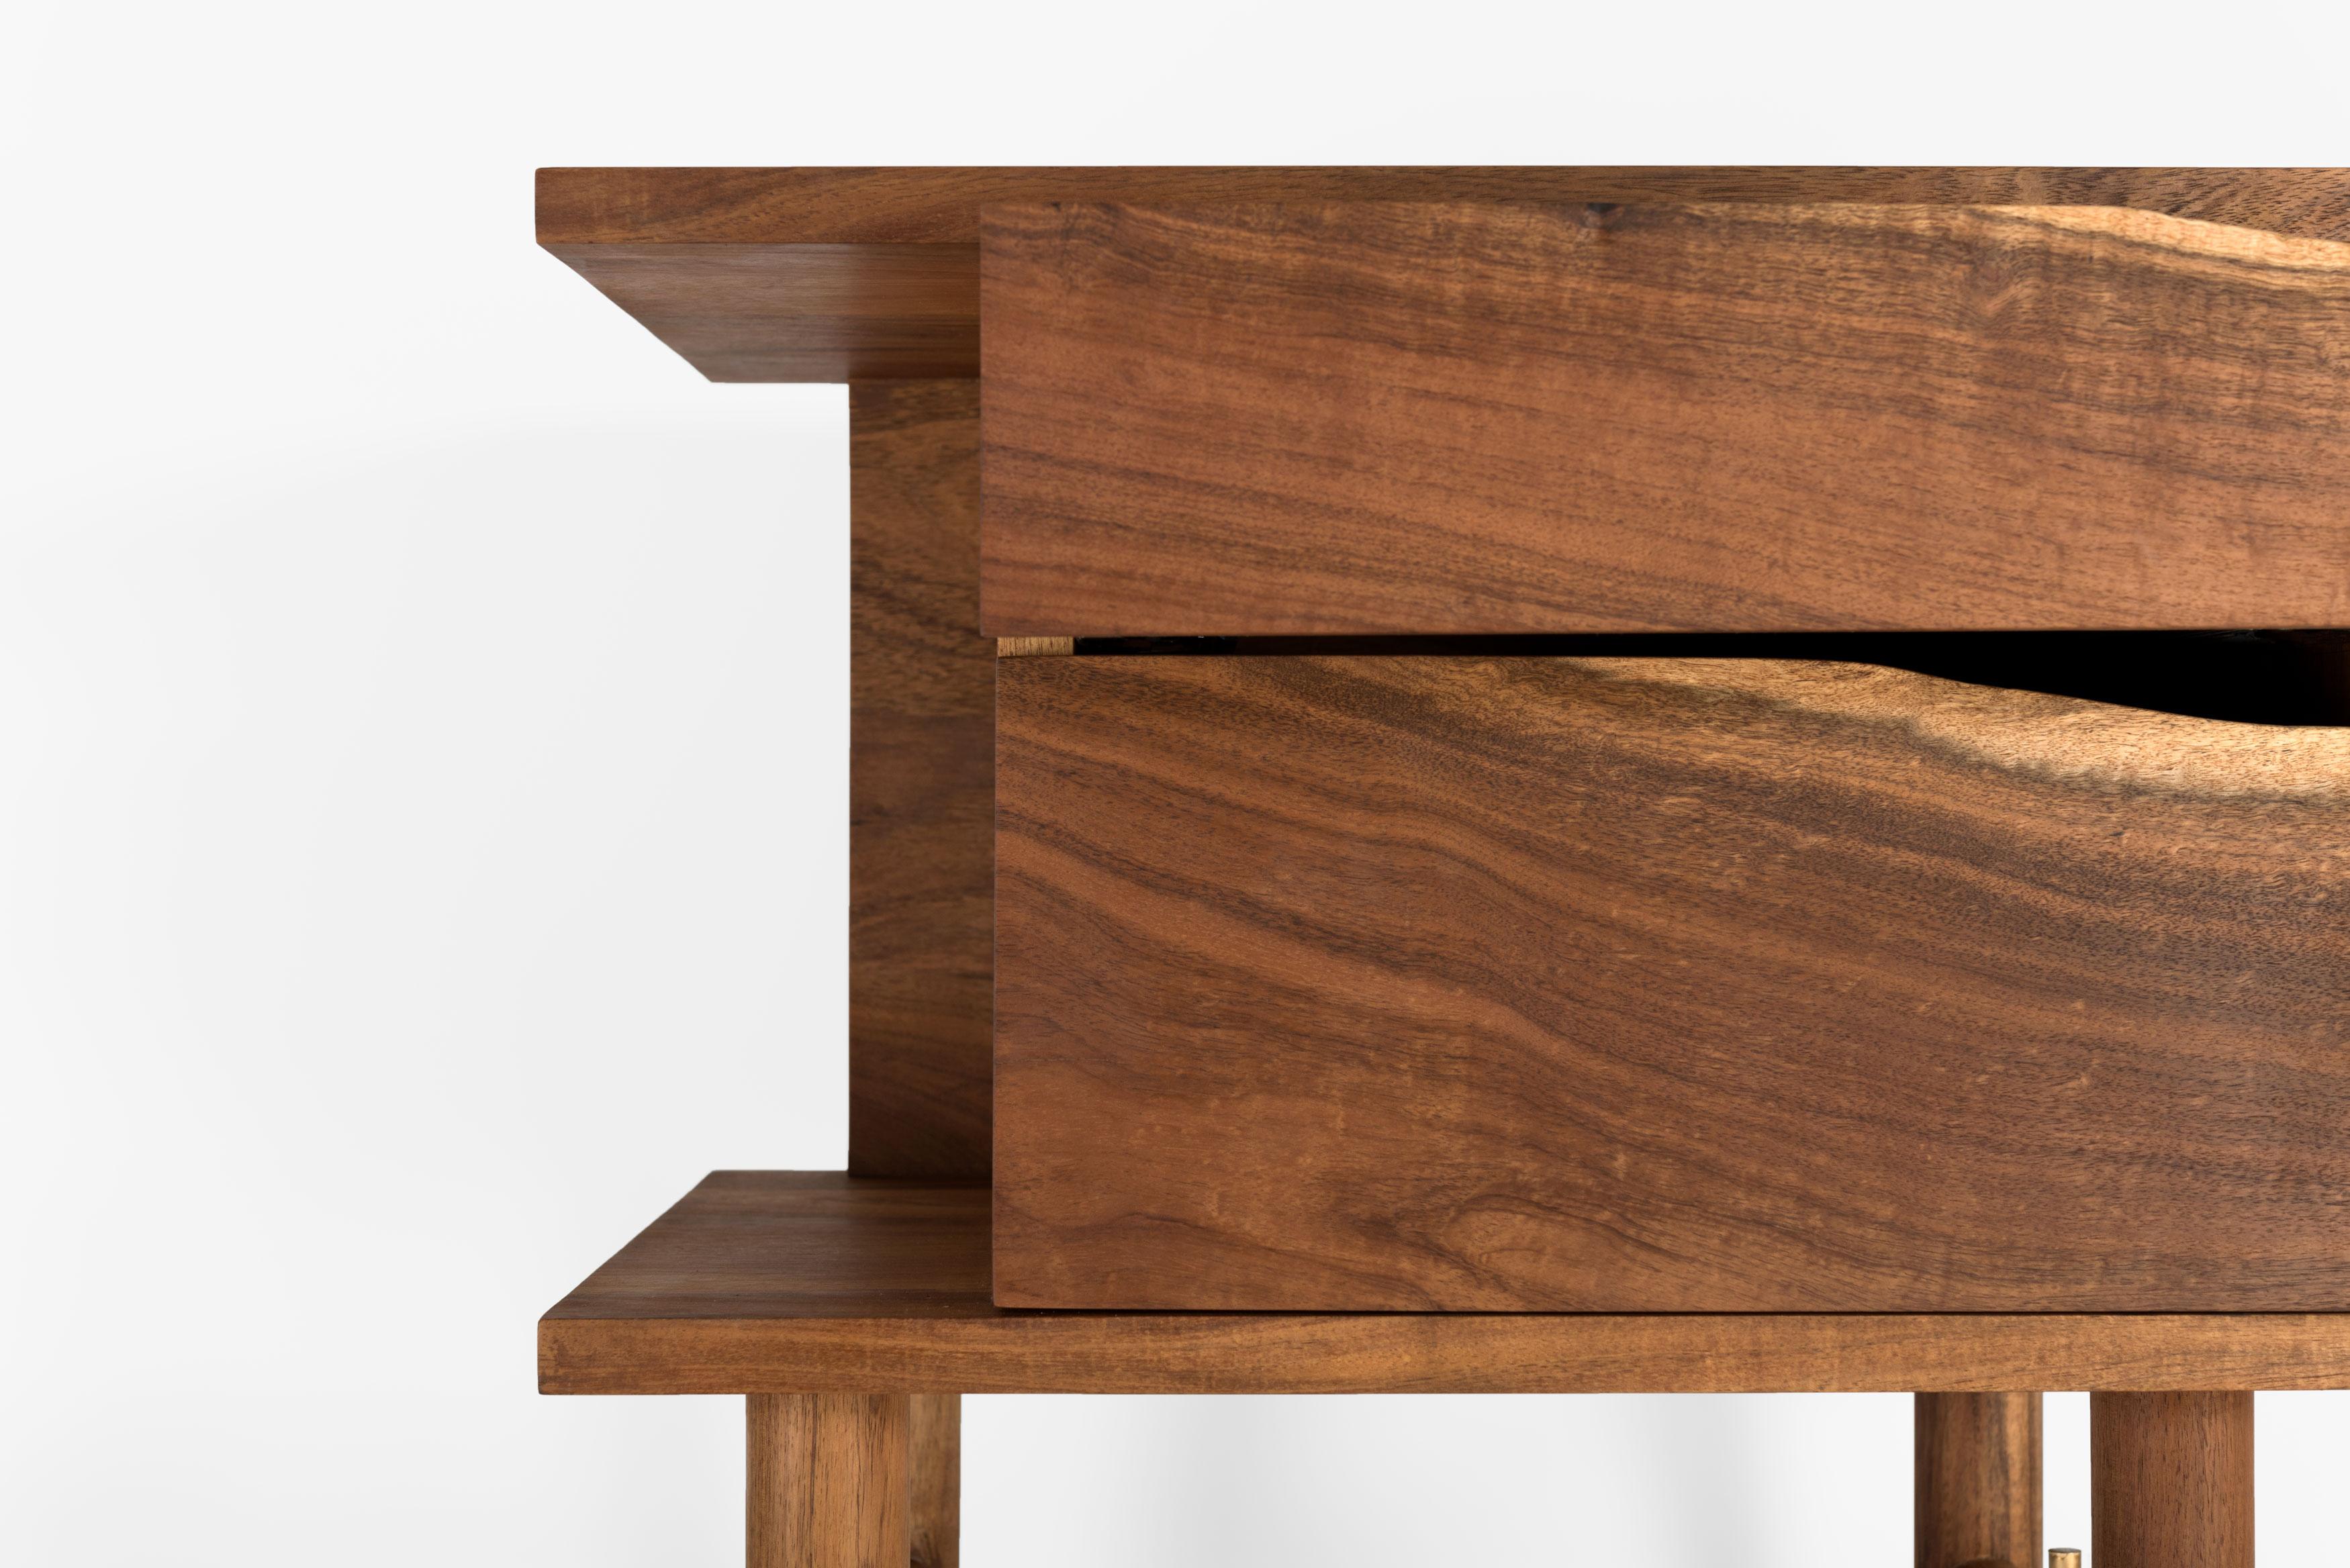 Le design de la table de nuit Ocum est caractérisé par la recherche de proportions équilibrées, la simplicité des formes de base et une construction minimaliste. Les textures contrastées du noyer des Caraïbes et les détails en bronze lui donnent